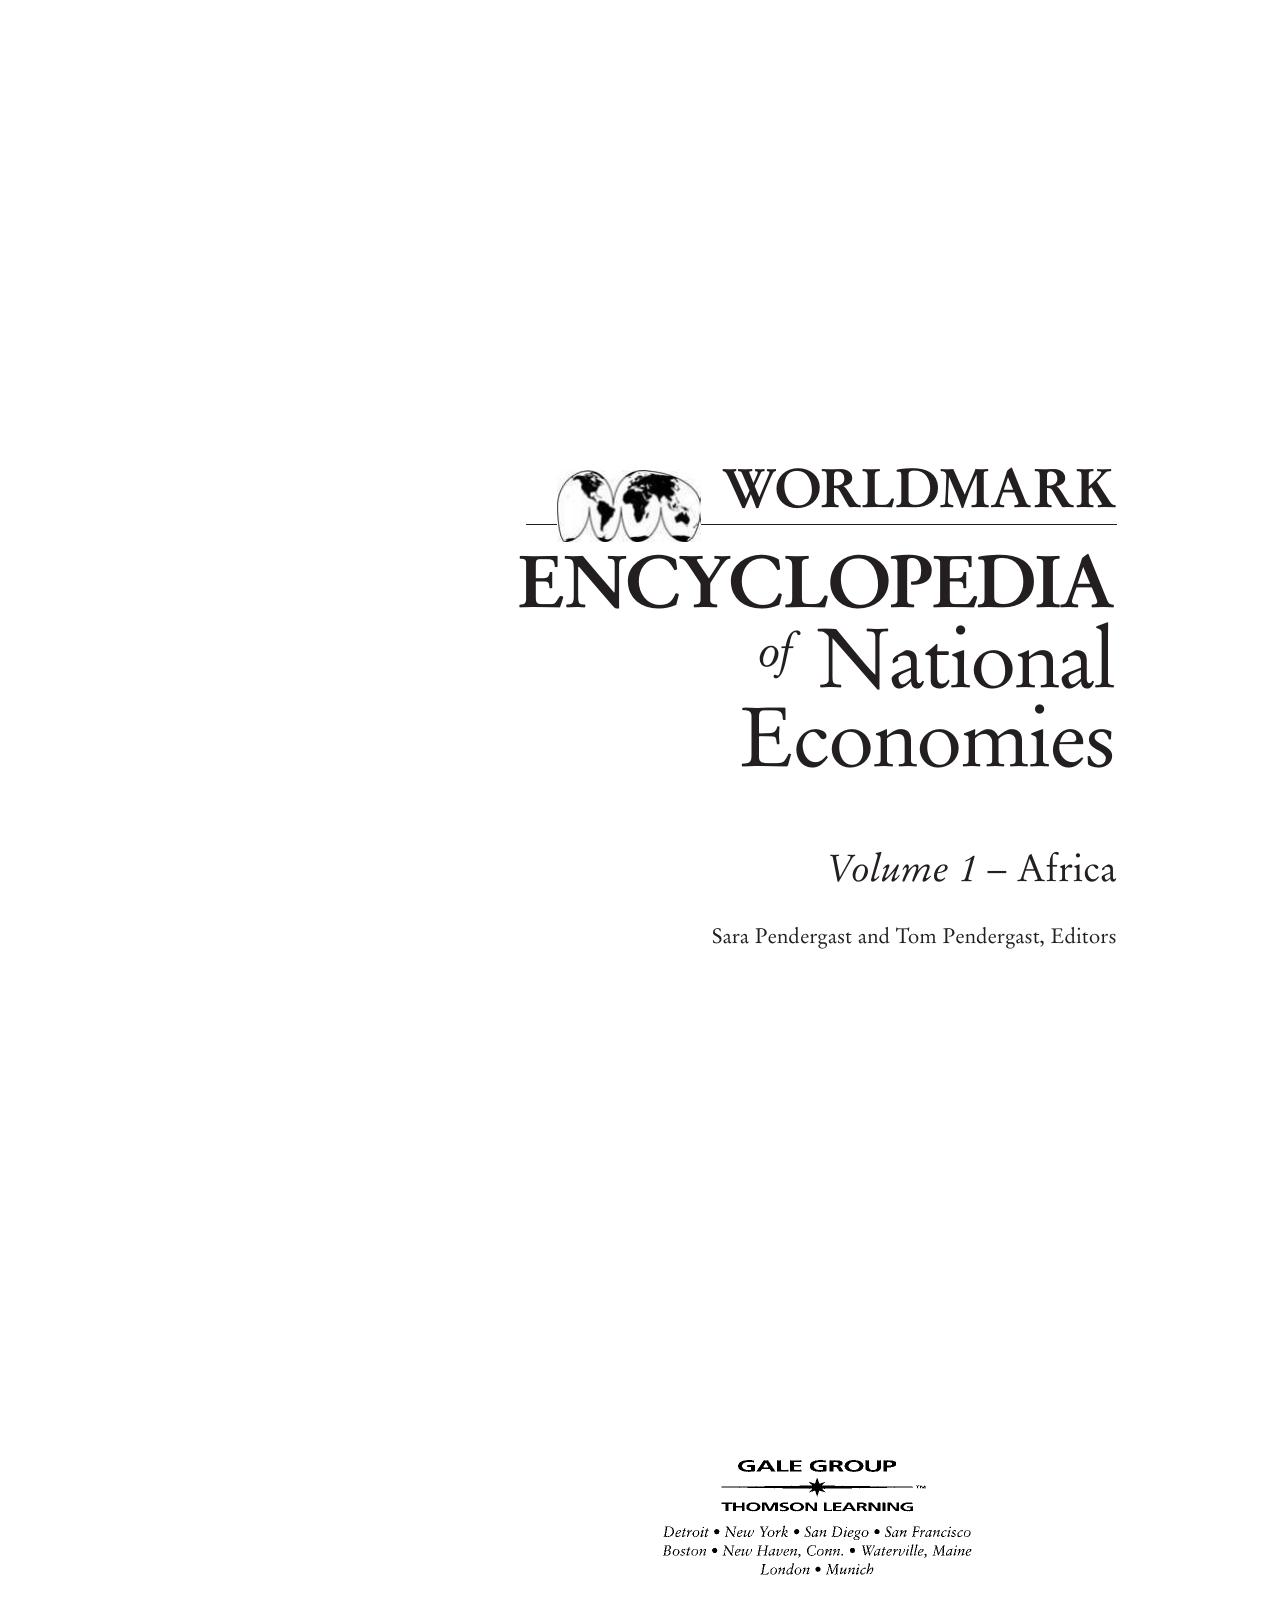 Worldmark Encyclopedia of National Economies - Africa